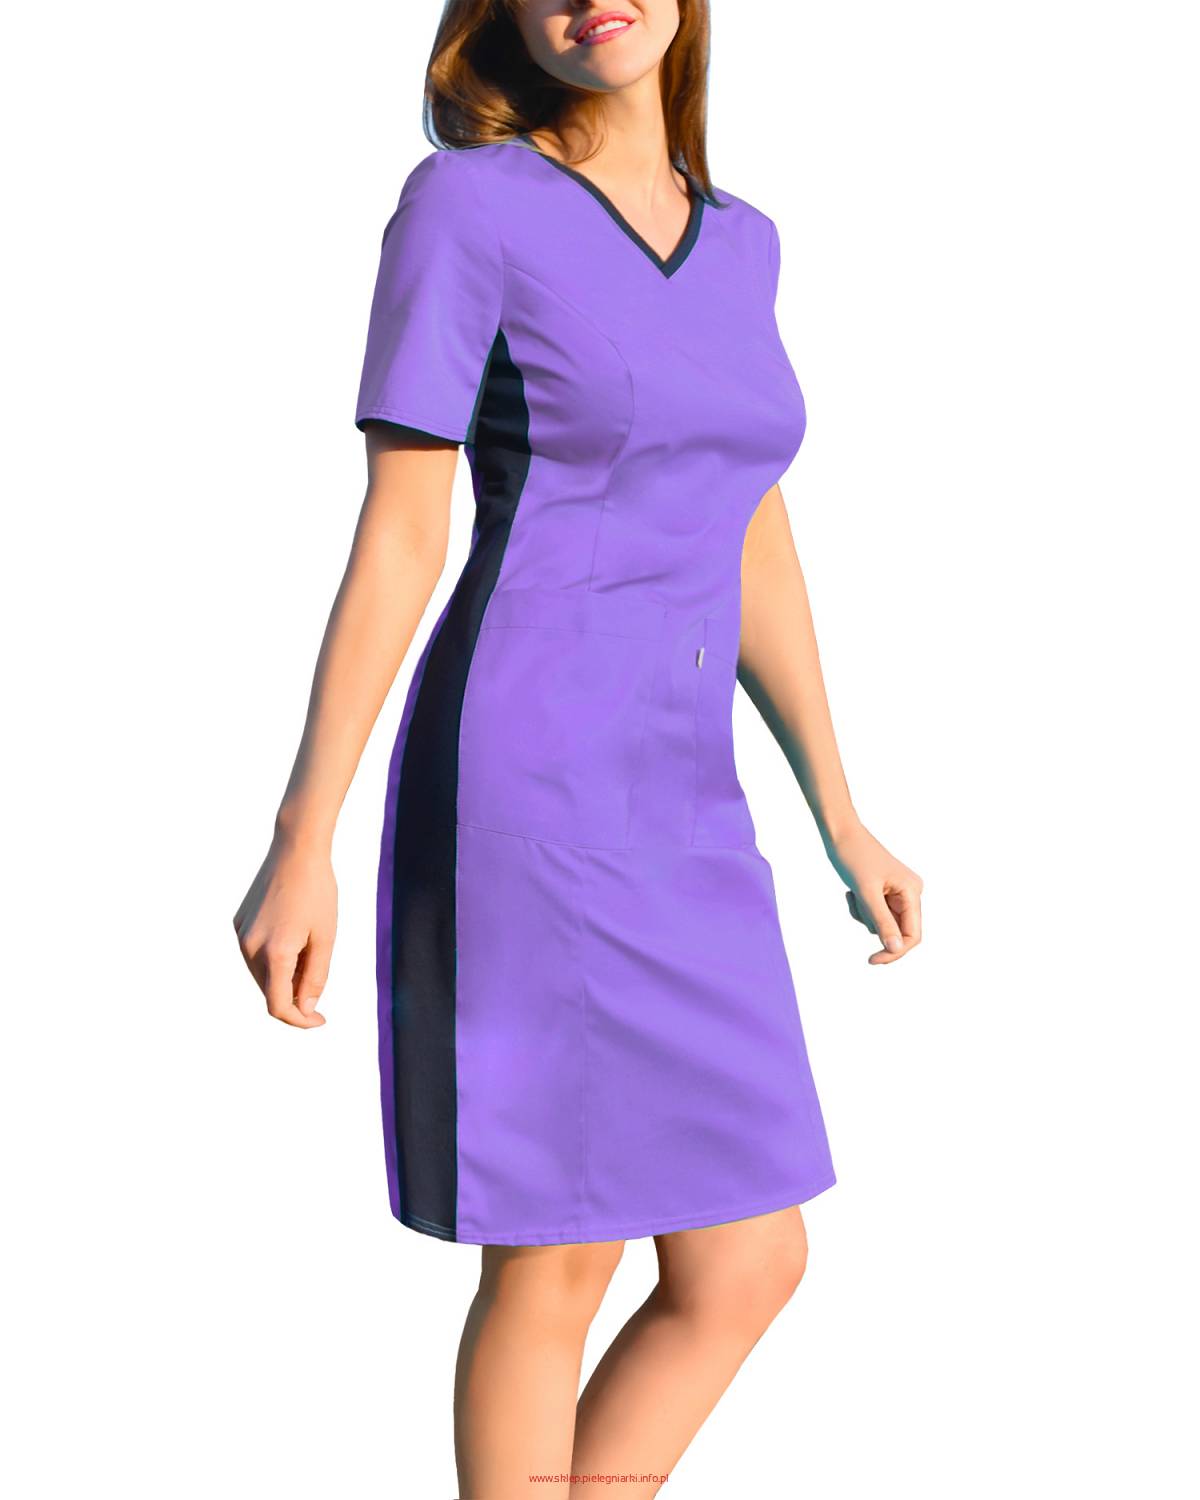 Sukienka medyczna fioletowa, z elastycznym ściągaczem w boku (SKE1-Fi)